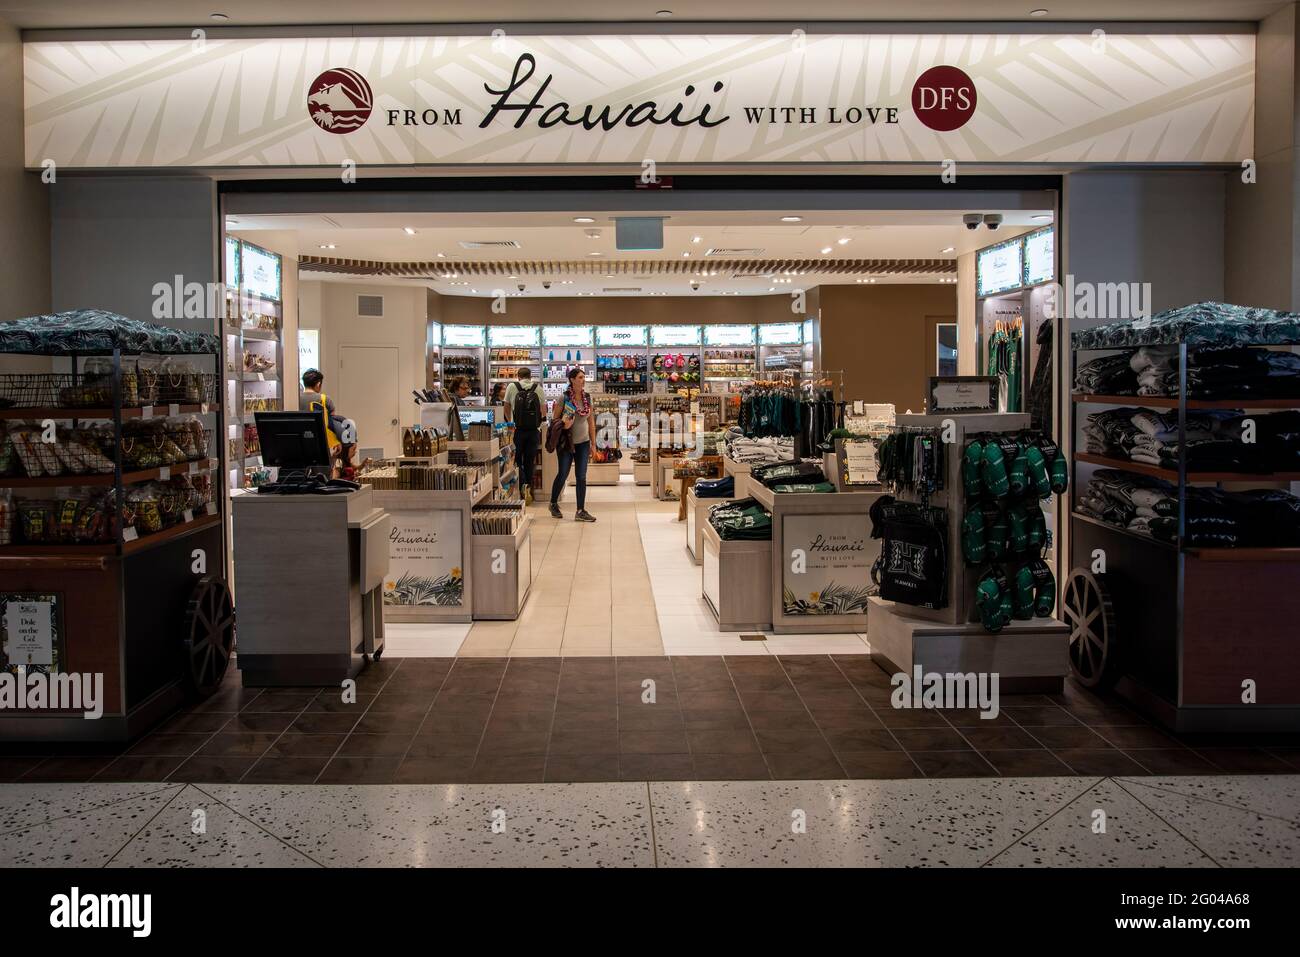 Honolulu, Hawaï. Aéroport international Daniel K. Inouye. Les voyageurs magasinent dans un magasin hors taxes situé dans le hall de l'aéroport. Banque D'Images